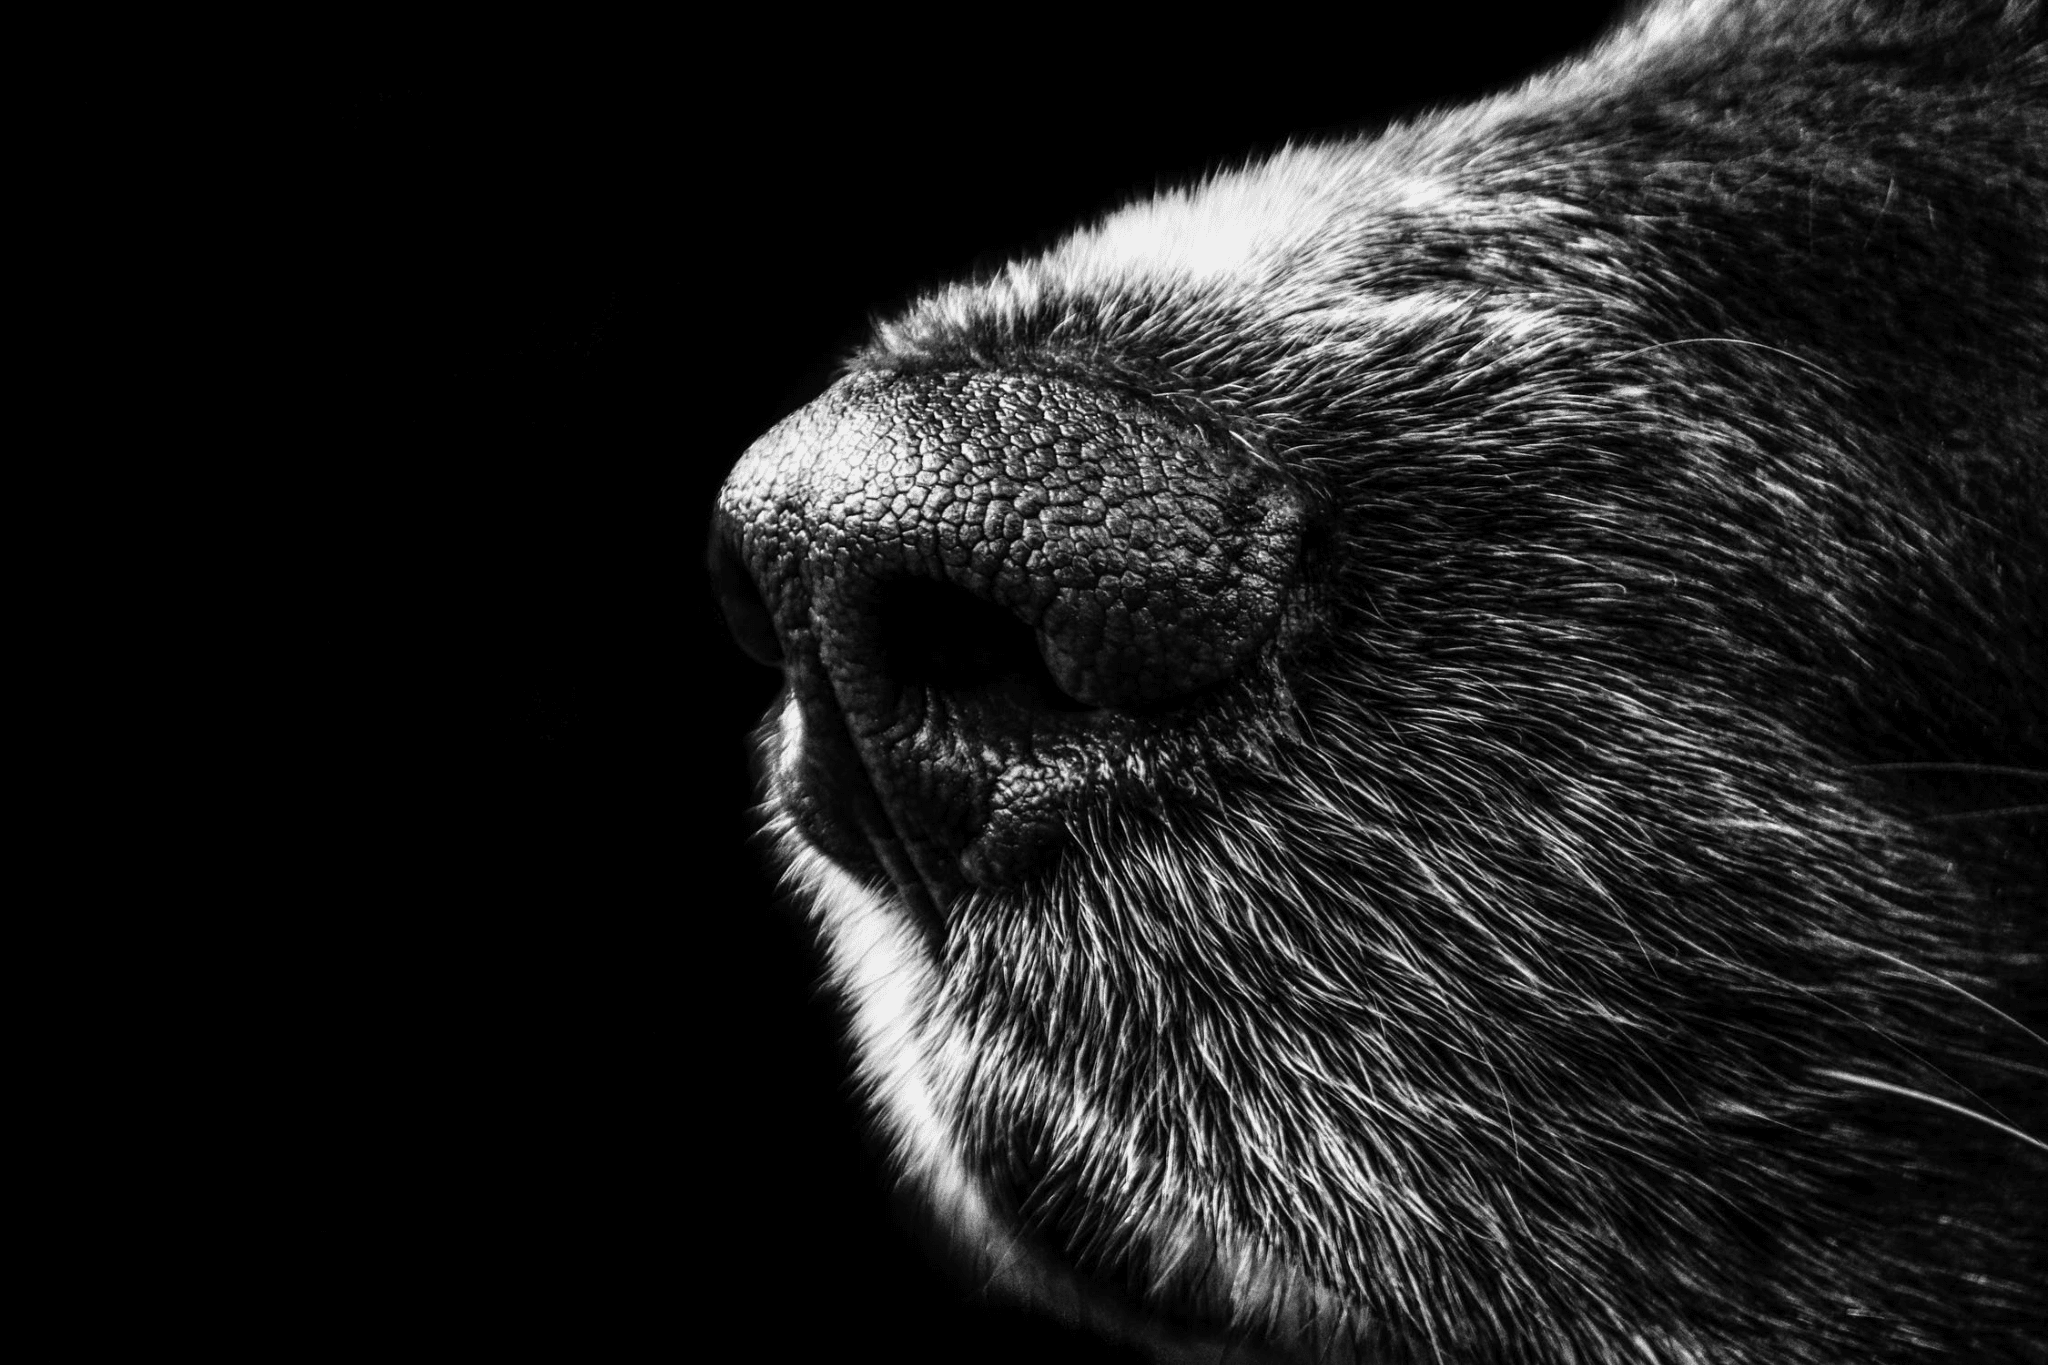 macro photograph of a pet's nose